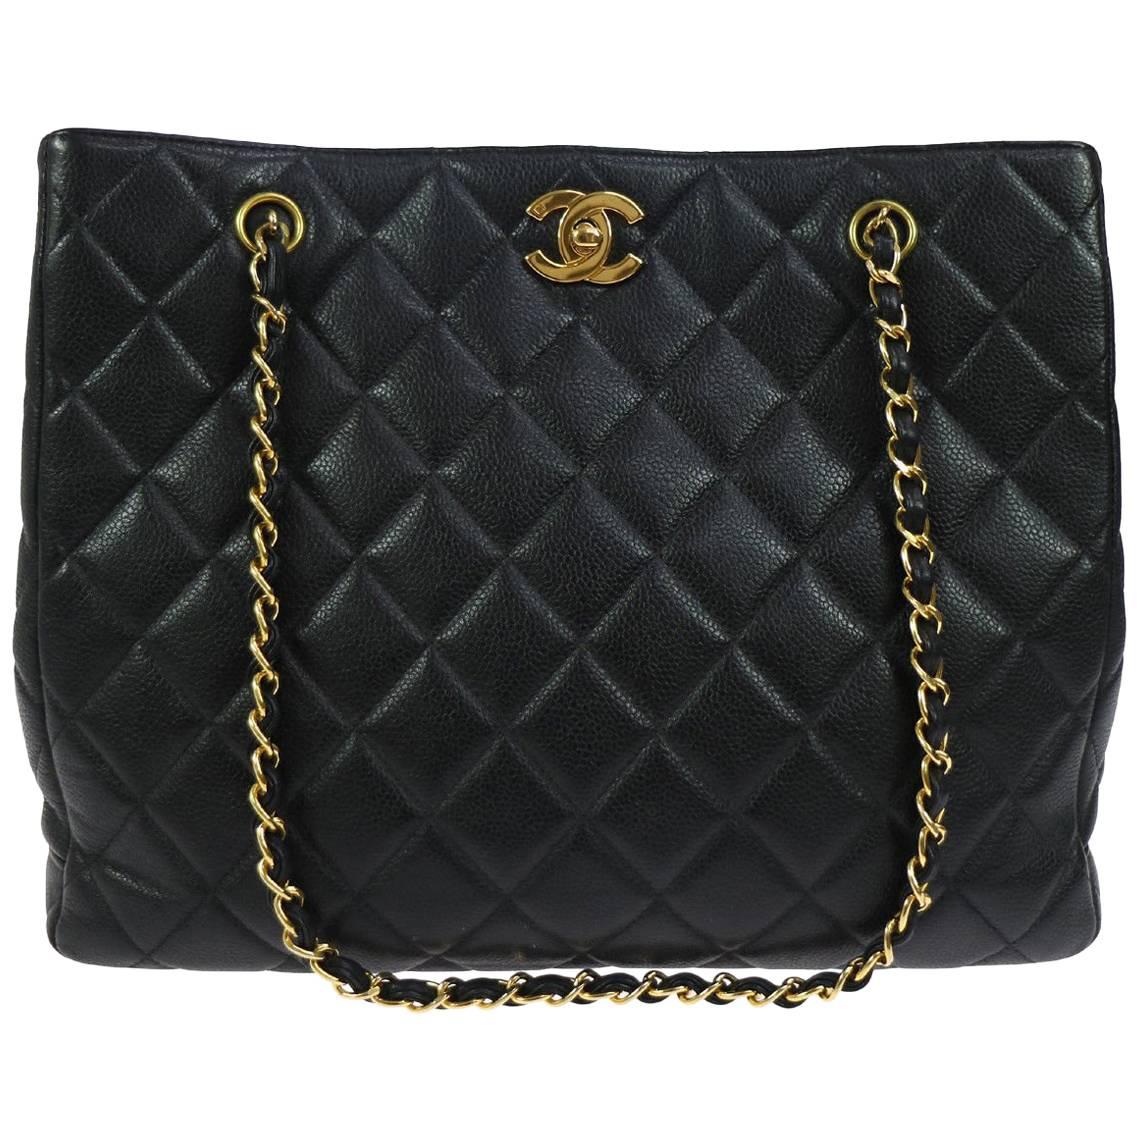 Chanel Black Caviar Leather Gold Hardware Evening Shopper Shoulder Tote Bag